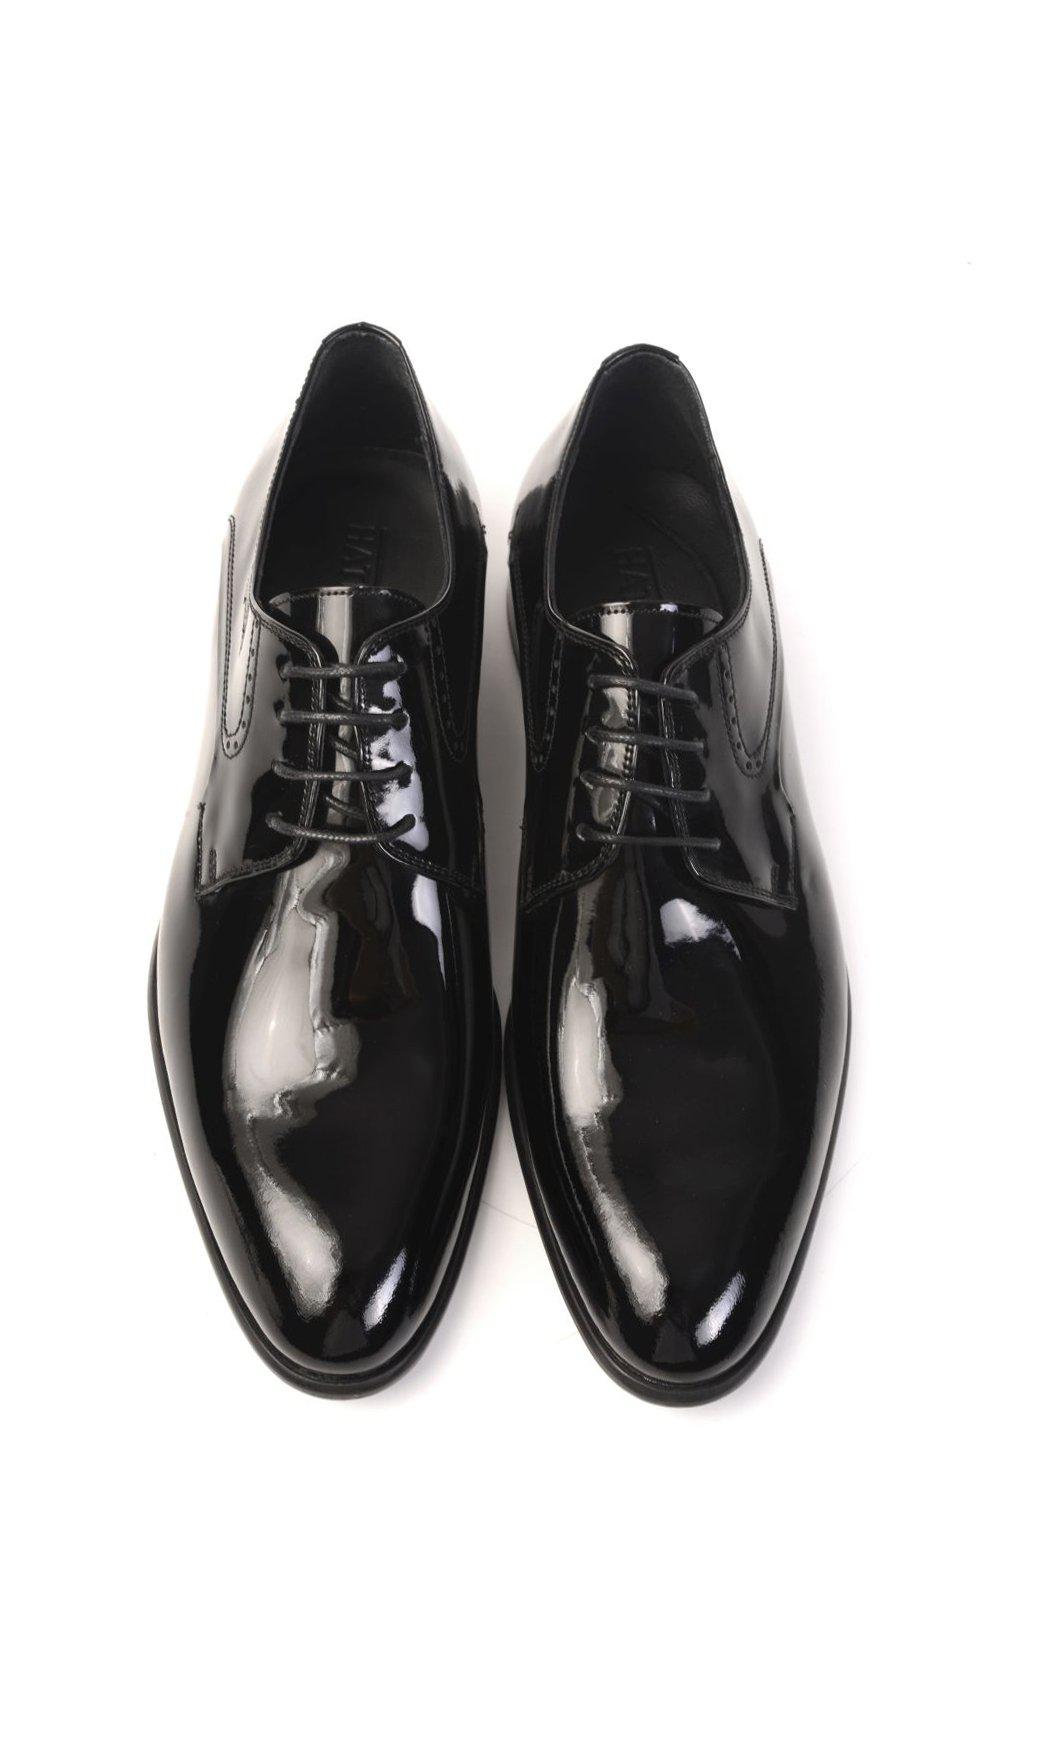 black dress shoes shiny